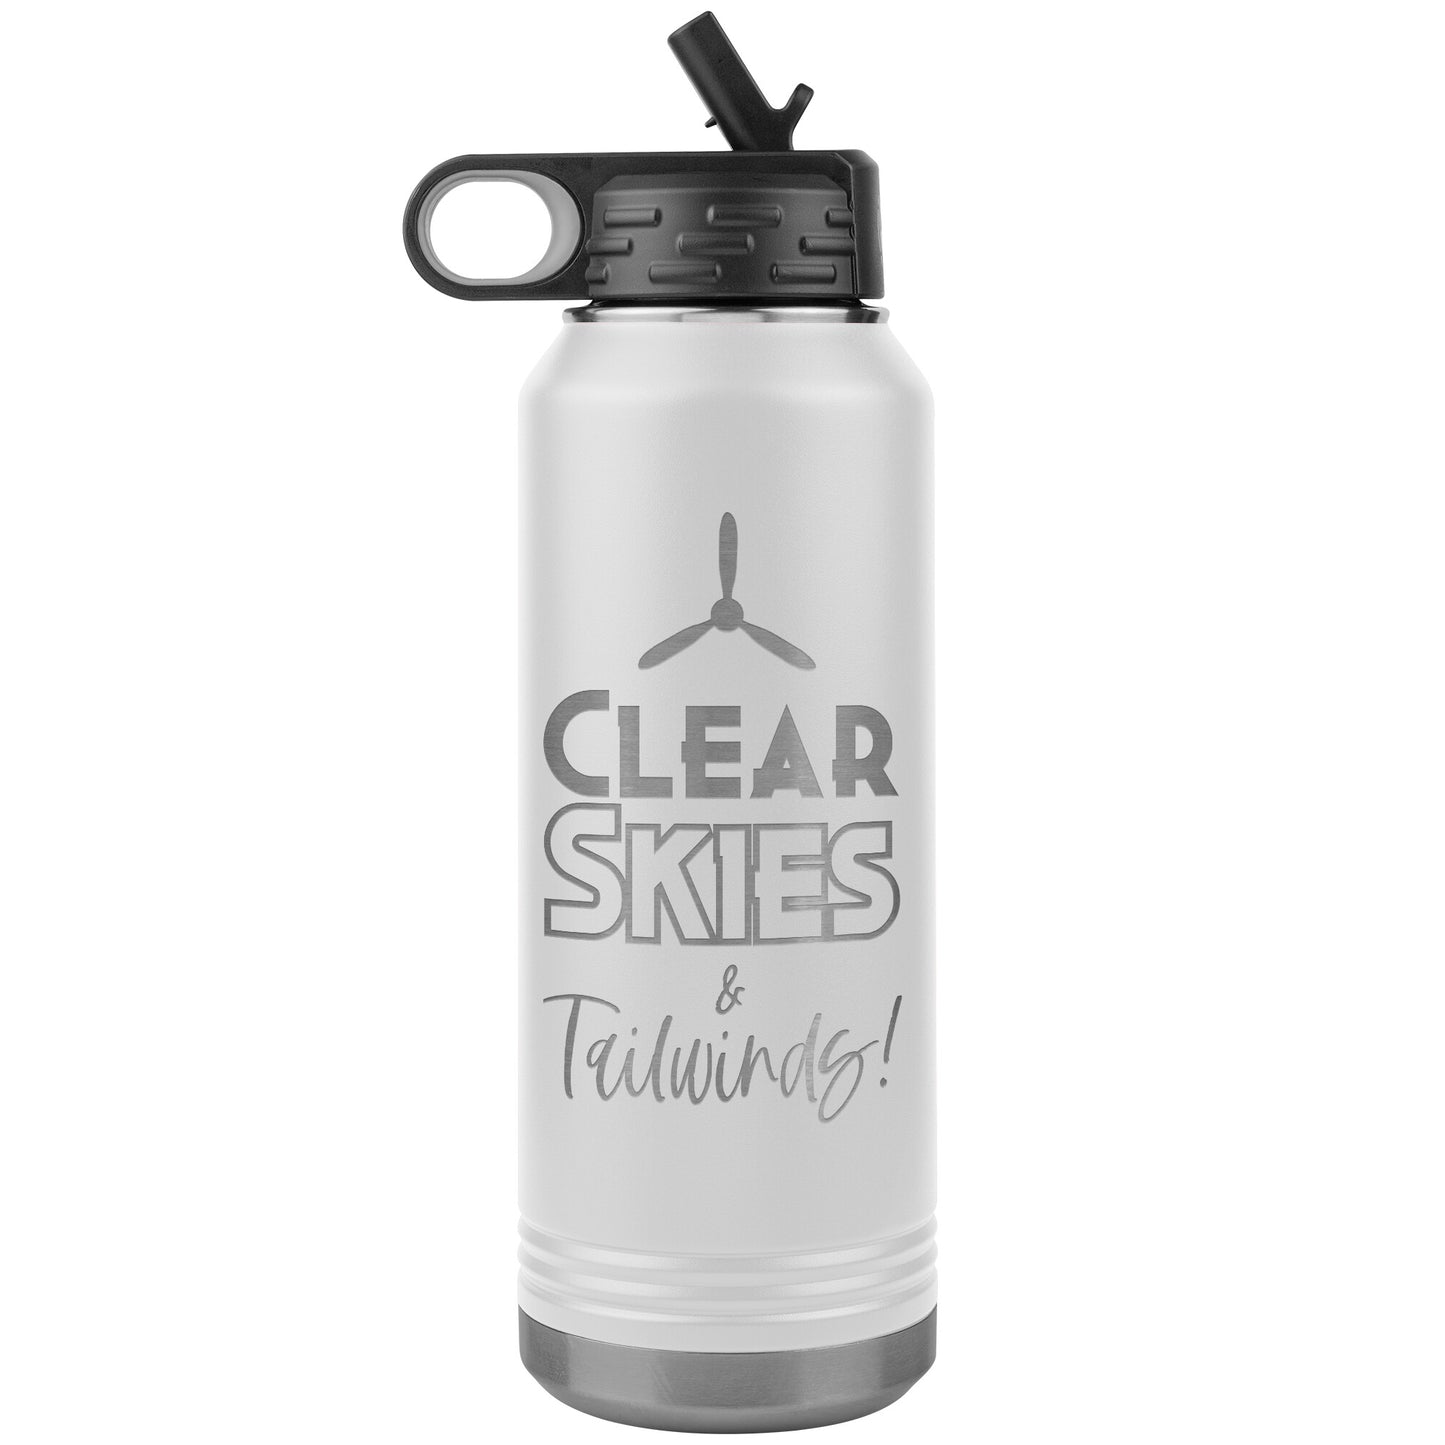 Clear Skies & Tailwinds! - 32 oz. water bottle (w/prop)